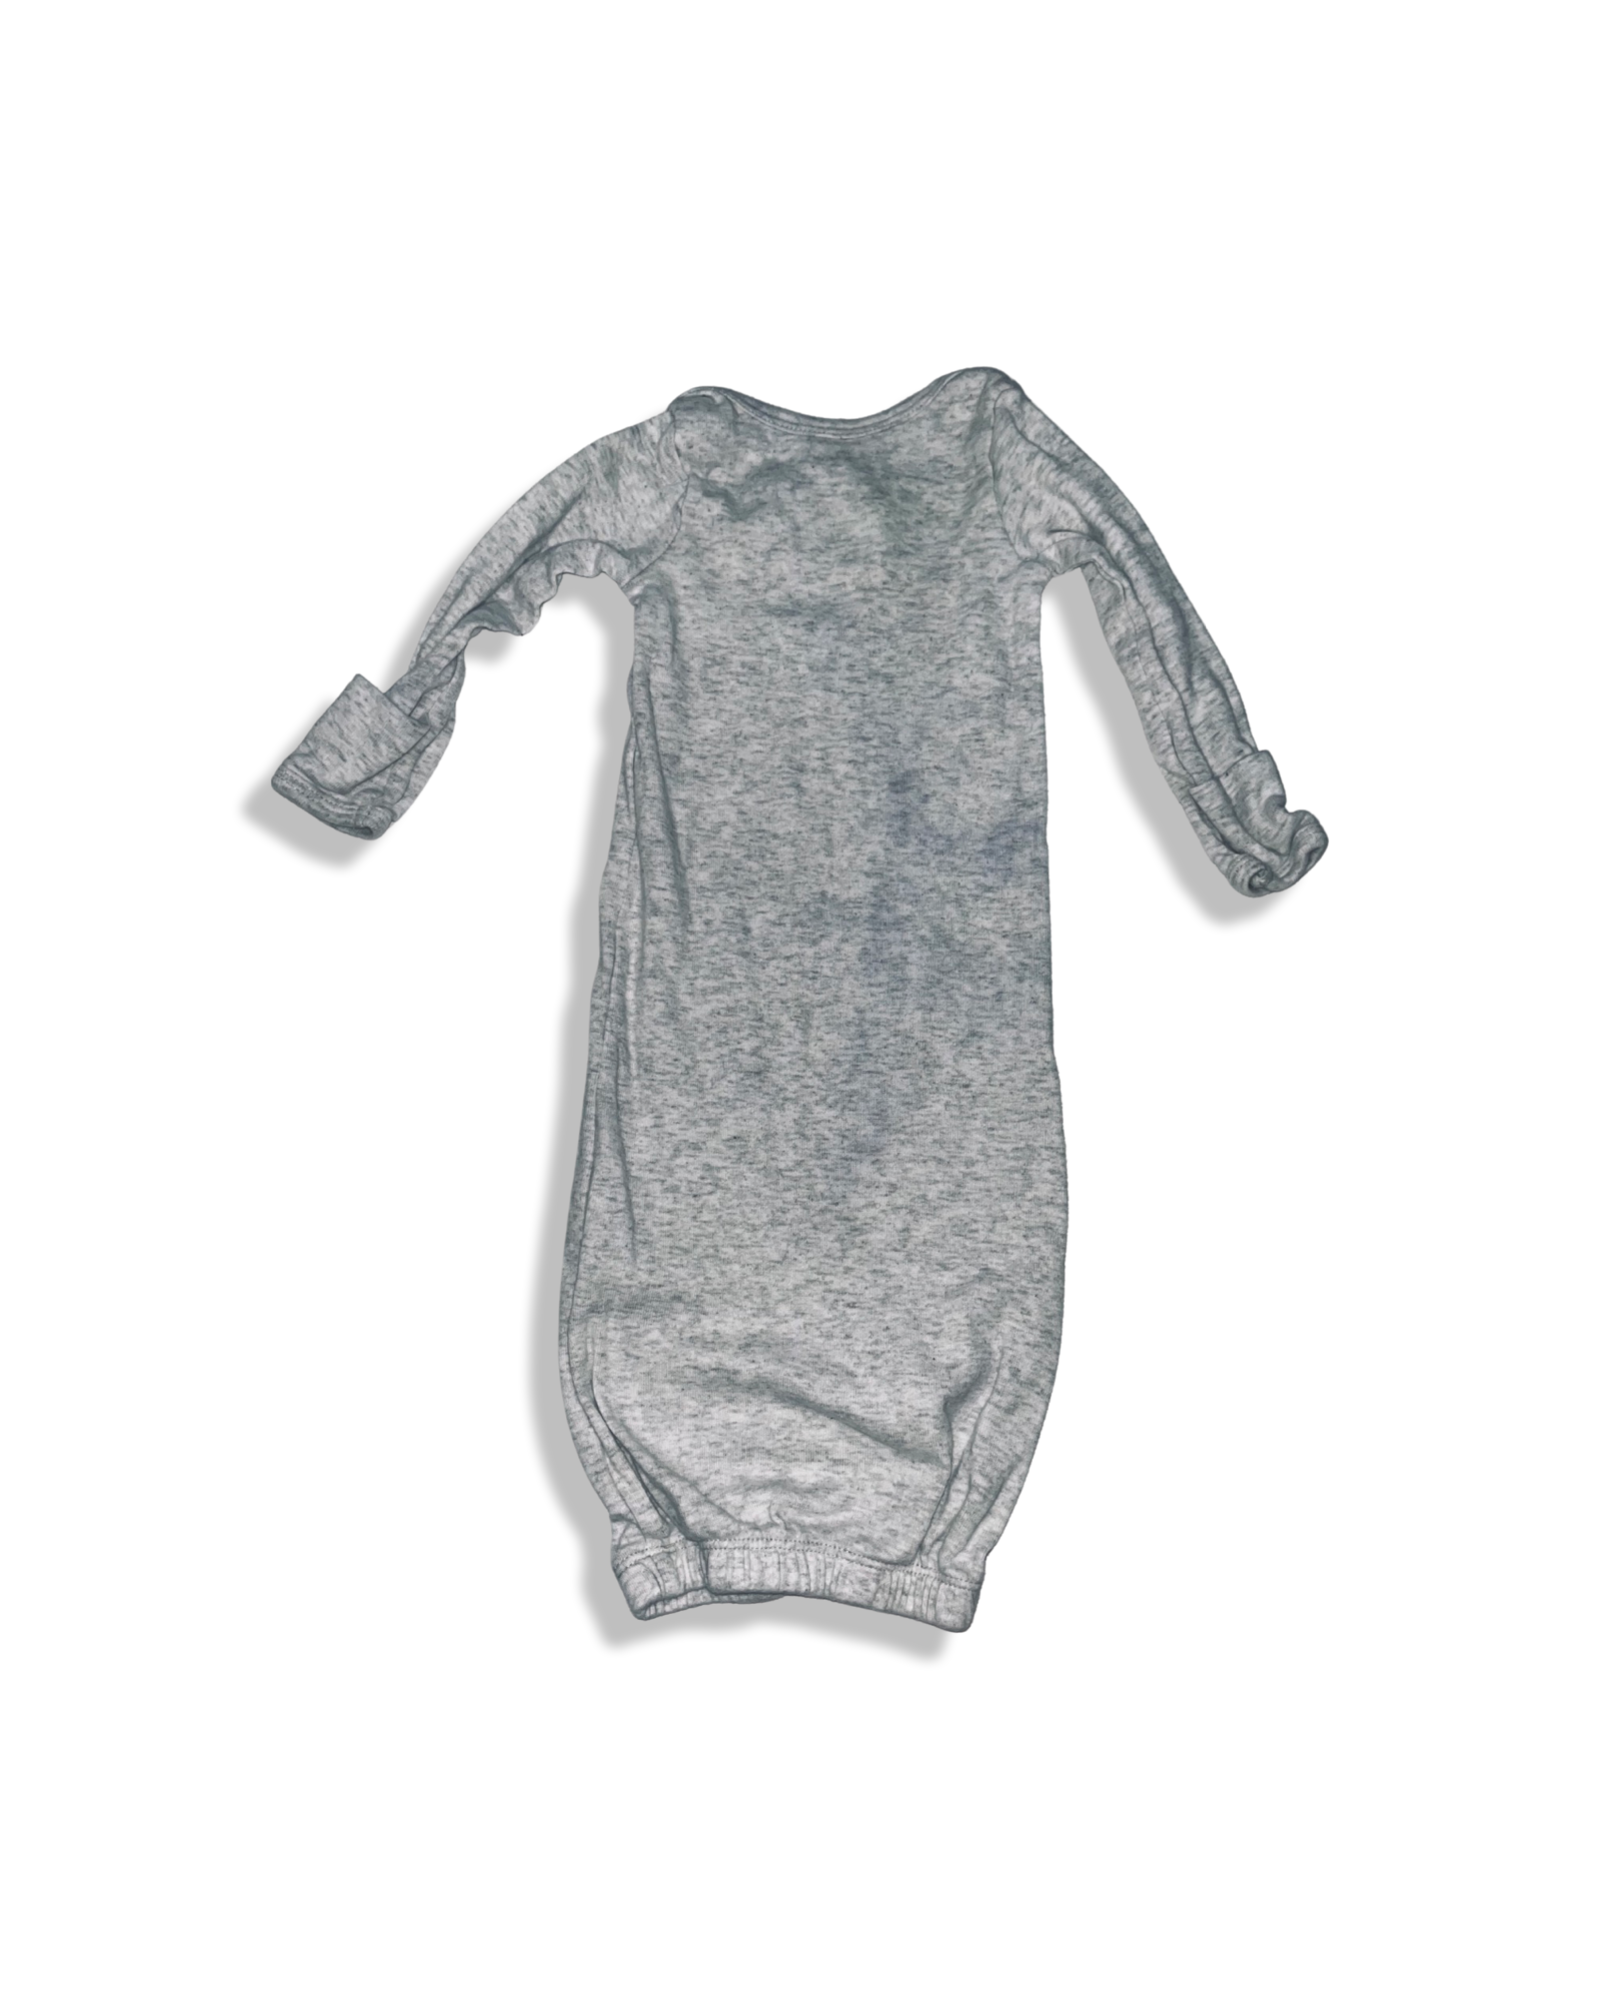 Carter's Elephant Sleep Gown (NB)